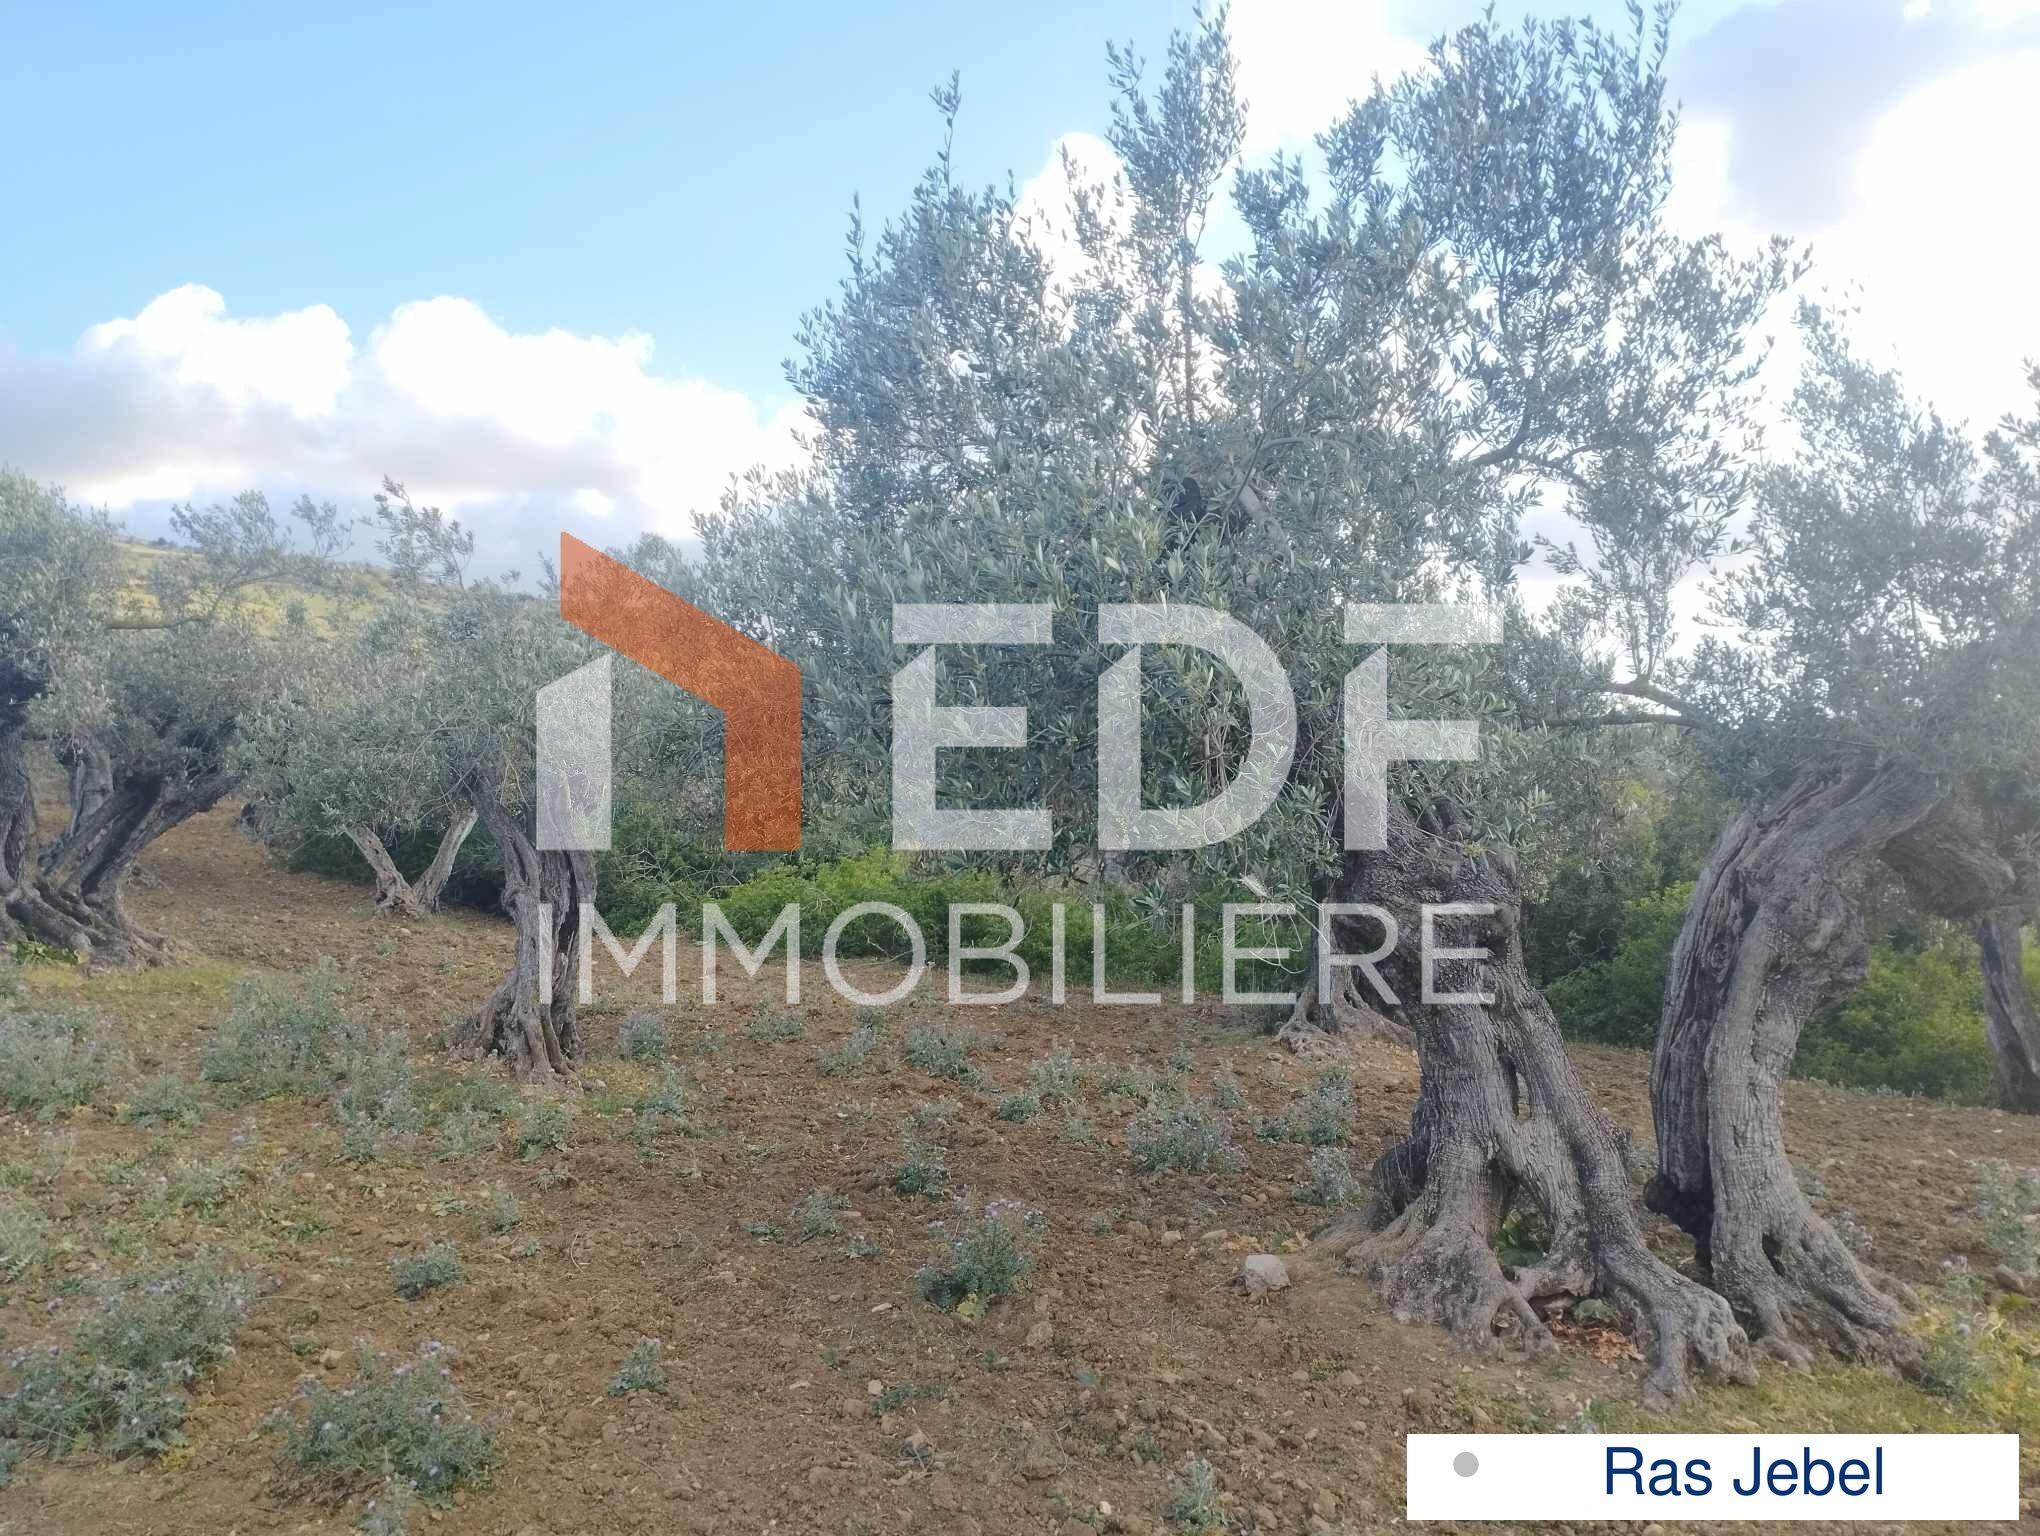 Réf 3437: A NE PAS RATER, A Vendre Terrain d'olives à Ras Jebel